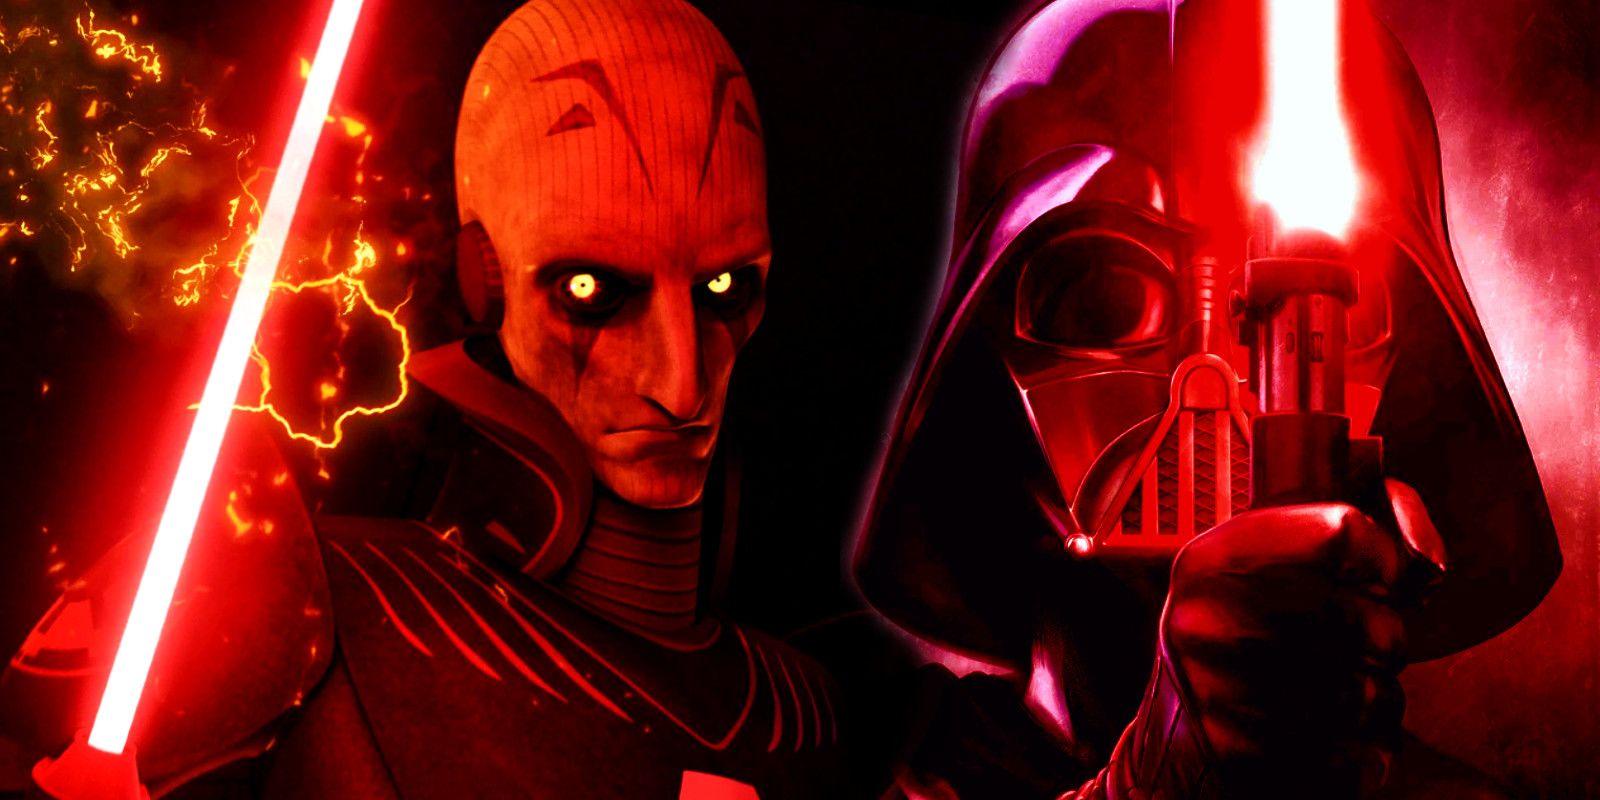 Star Wars da pistas sobre el brutal destino de los Inquisidores de Darth Vader